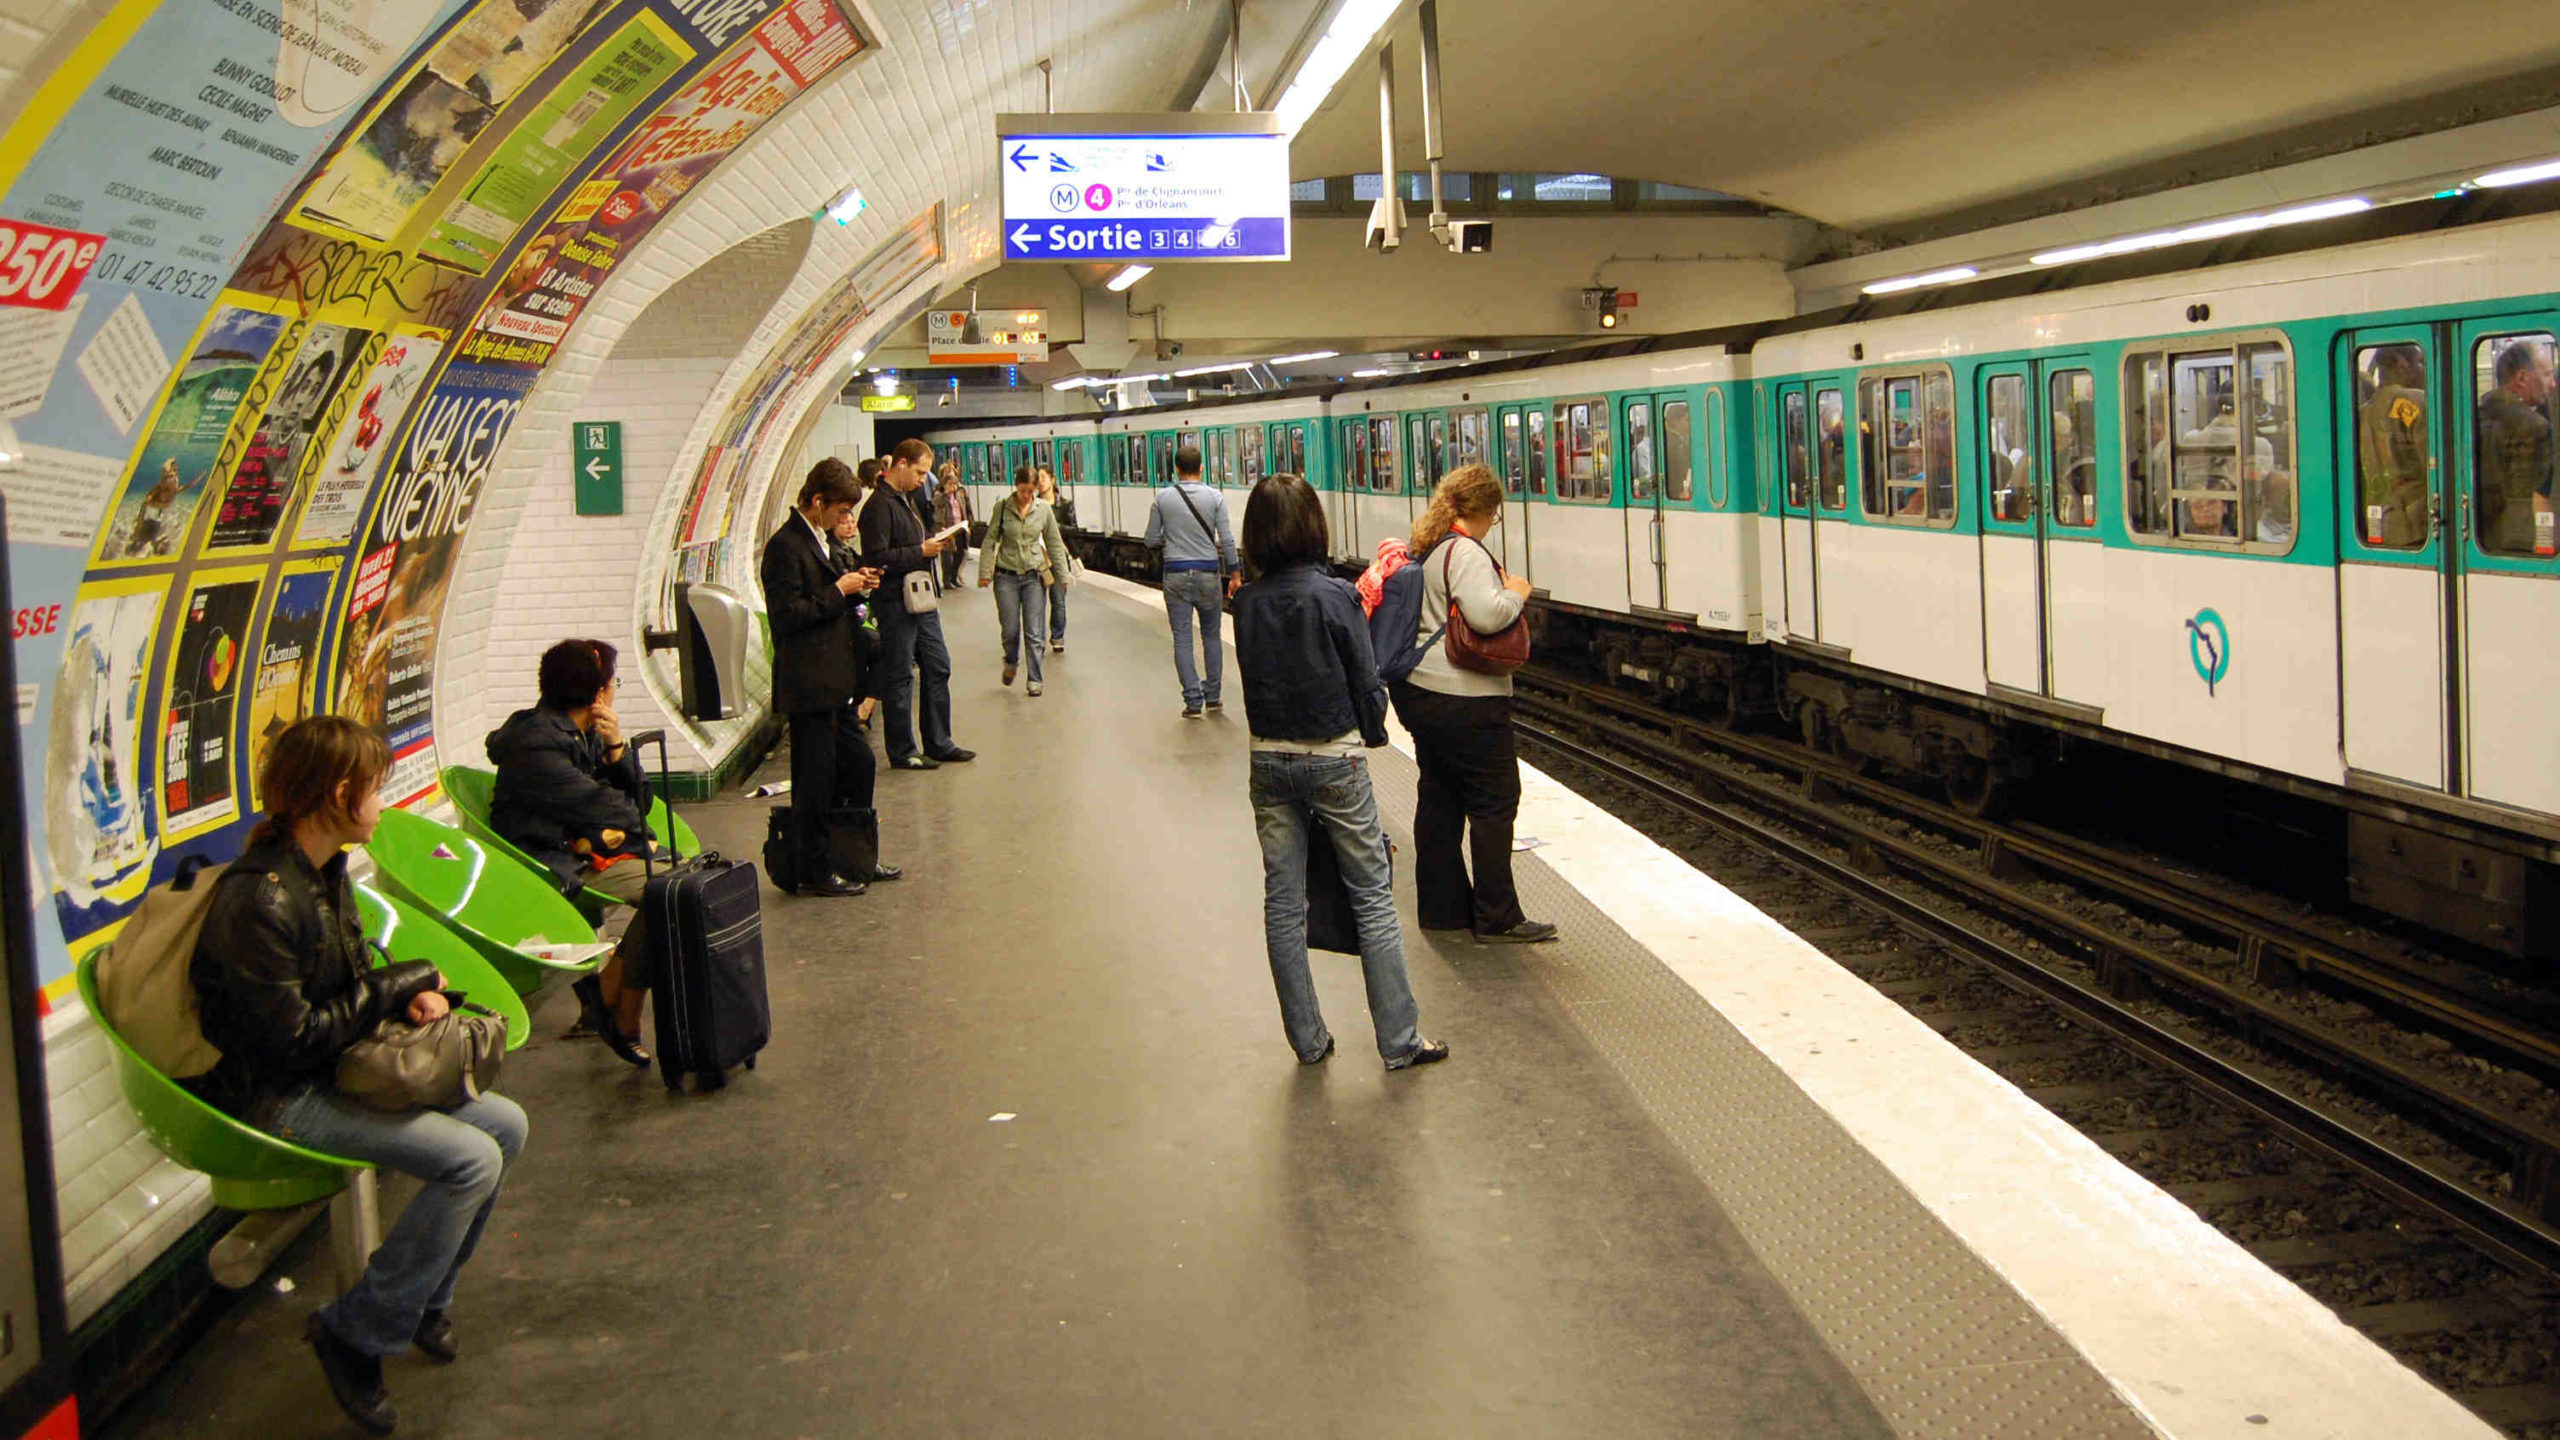 Deux frères partagent leurs astuces pour gagner du temps dans le métro parisien